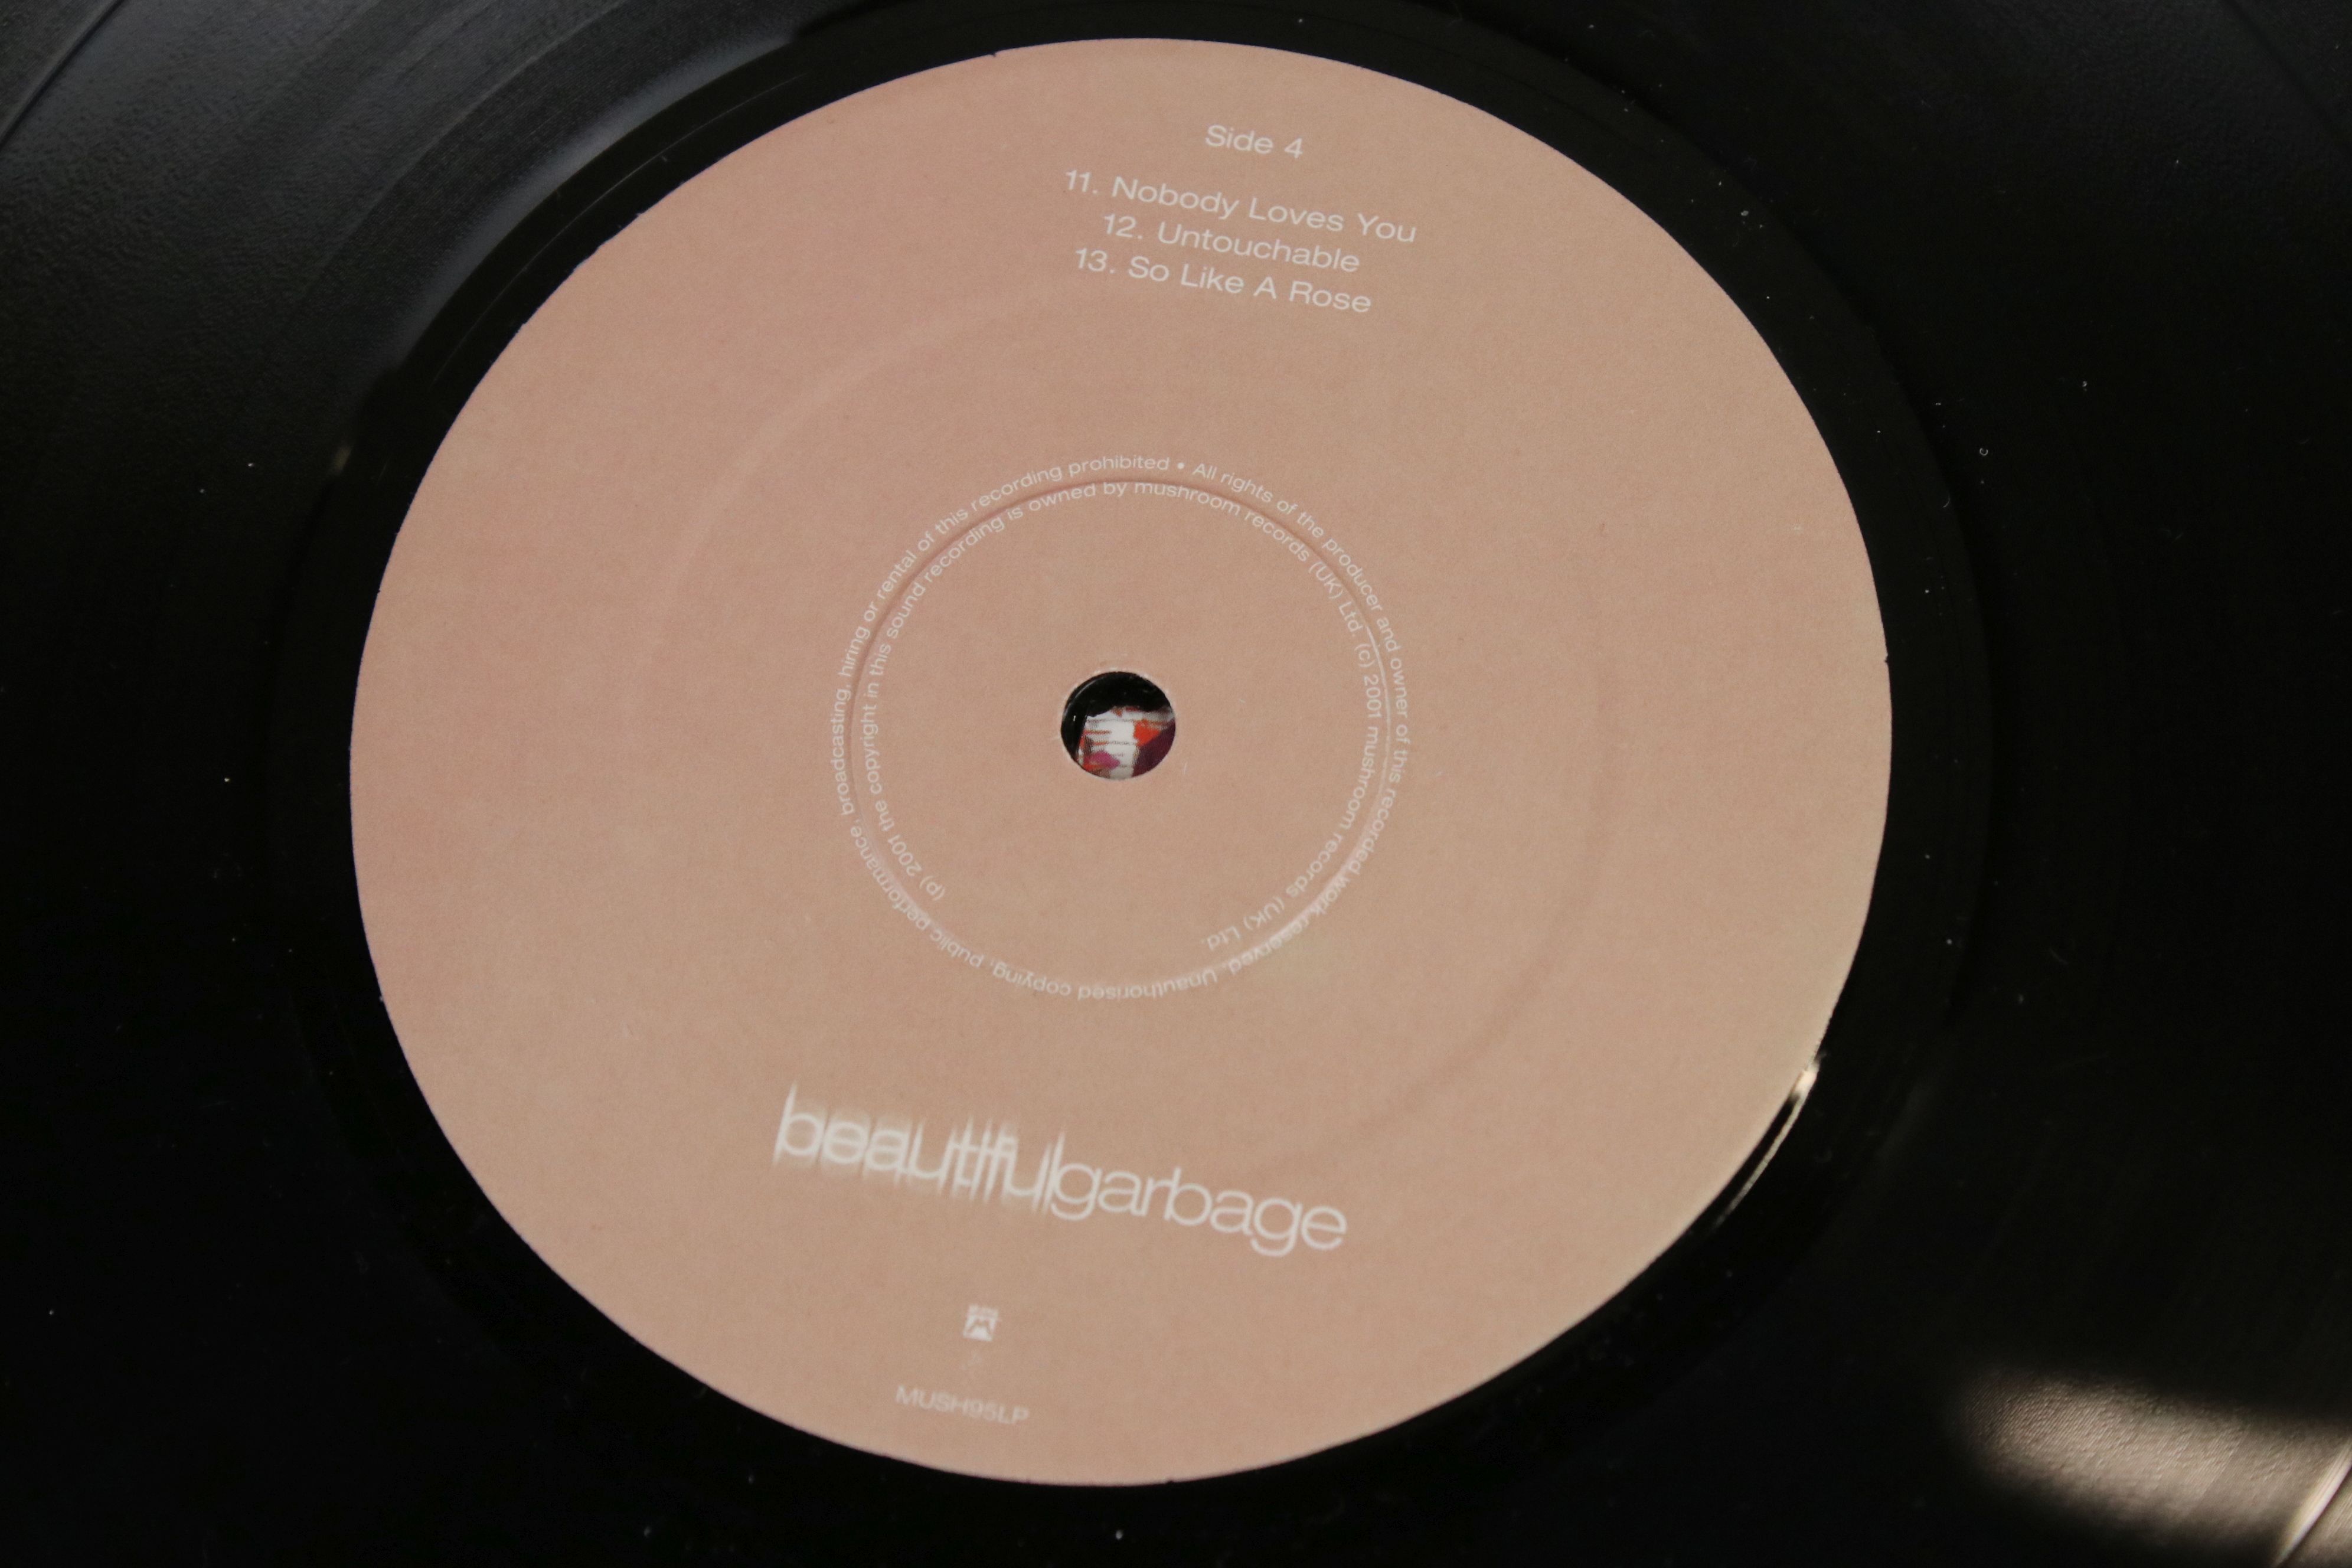 Vinyl - Garbage Beautiful Garbage Double LP on Mushroom MUSH95LP, with lyric inner, sleeve vg++, - Image 2 of 6